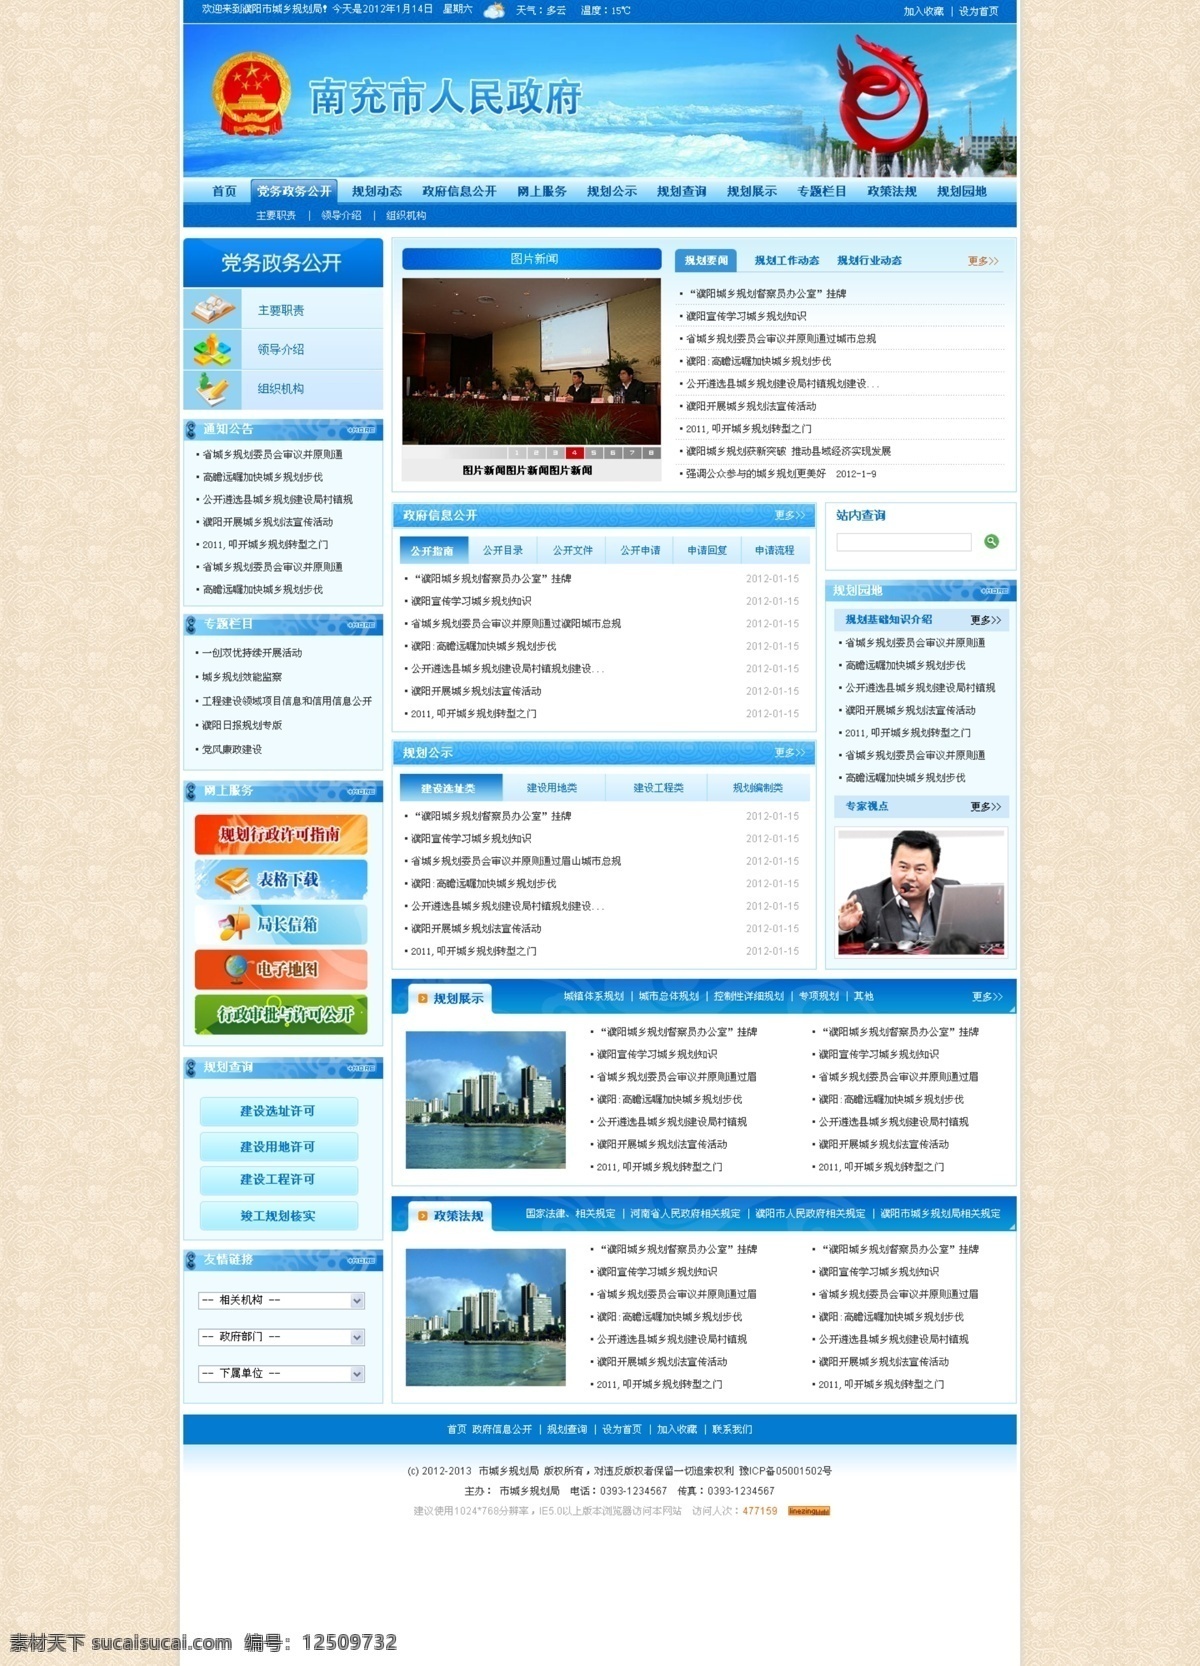 政府网站首页 图文 交互 大气 天空蓝 政府 网页 主页 列表 详细 模块 中文模版 网页模板 源文件